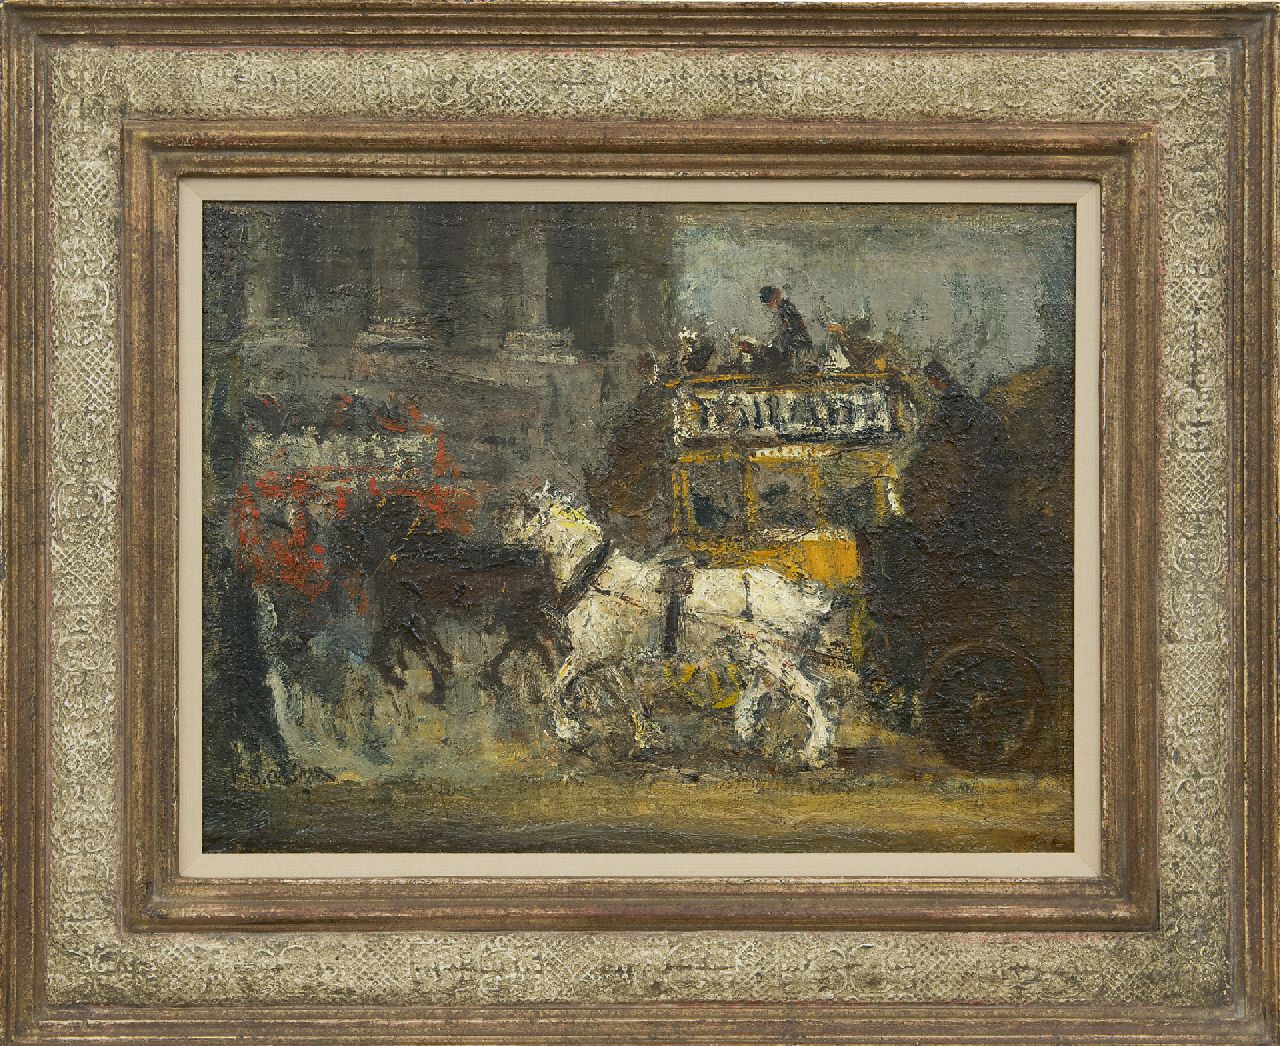 Cossaar J.C.W.  | Jacobus Cornelis Wyand 'Ko' Cossaar, Londense paardentram, olieverf op doek op paneel 31,2 x 41,8 cm, gesigneerd linksonder